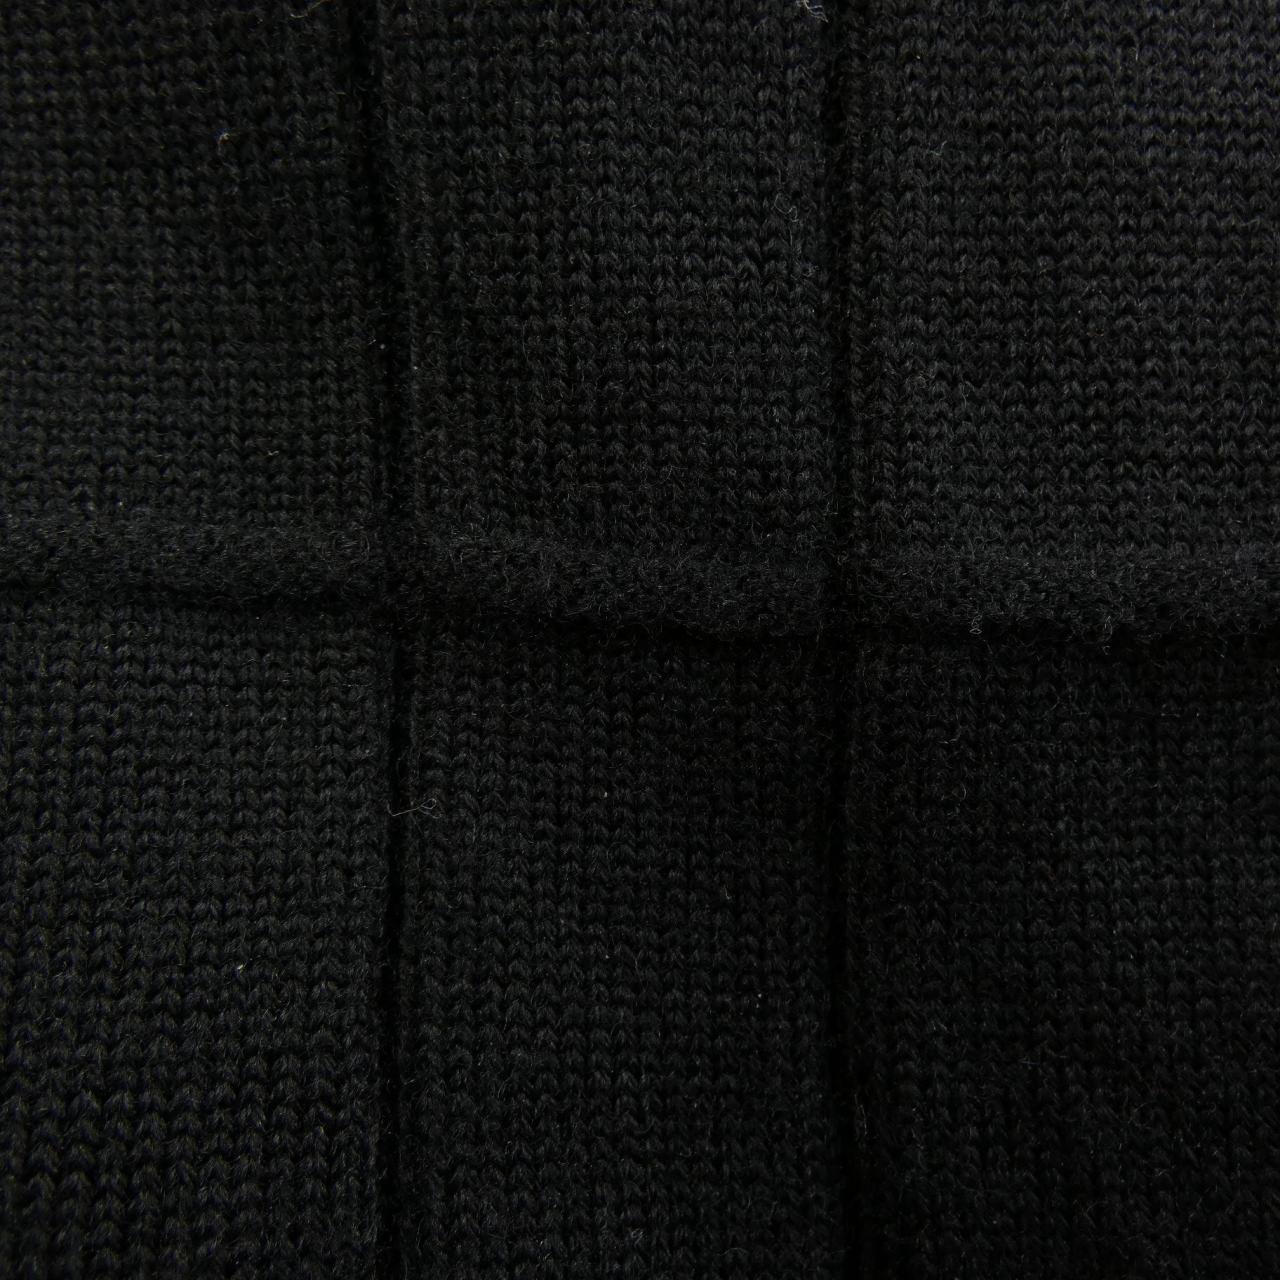 SALVATORE FERRAGAMO SALVATORE FERRAGAMO knitwear